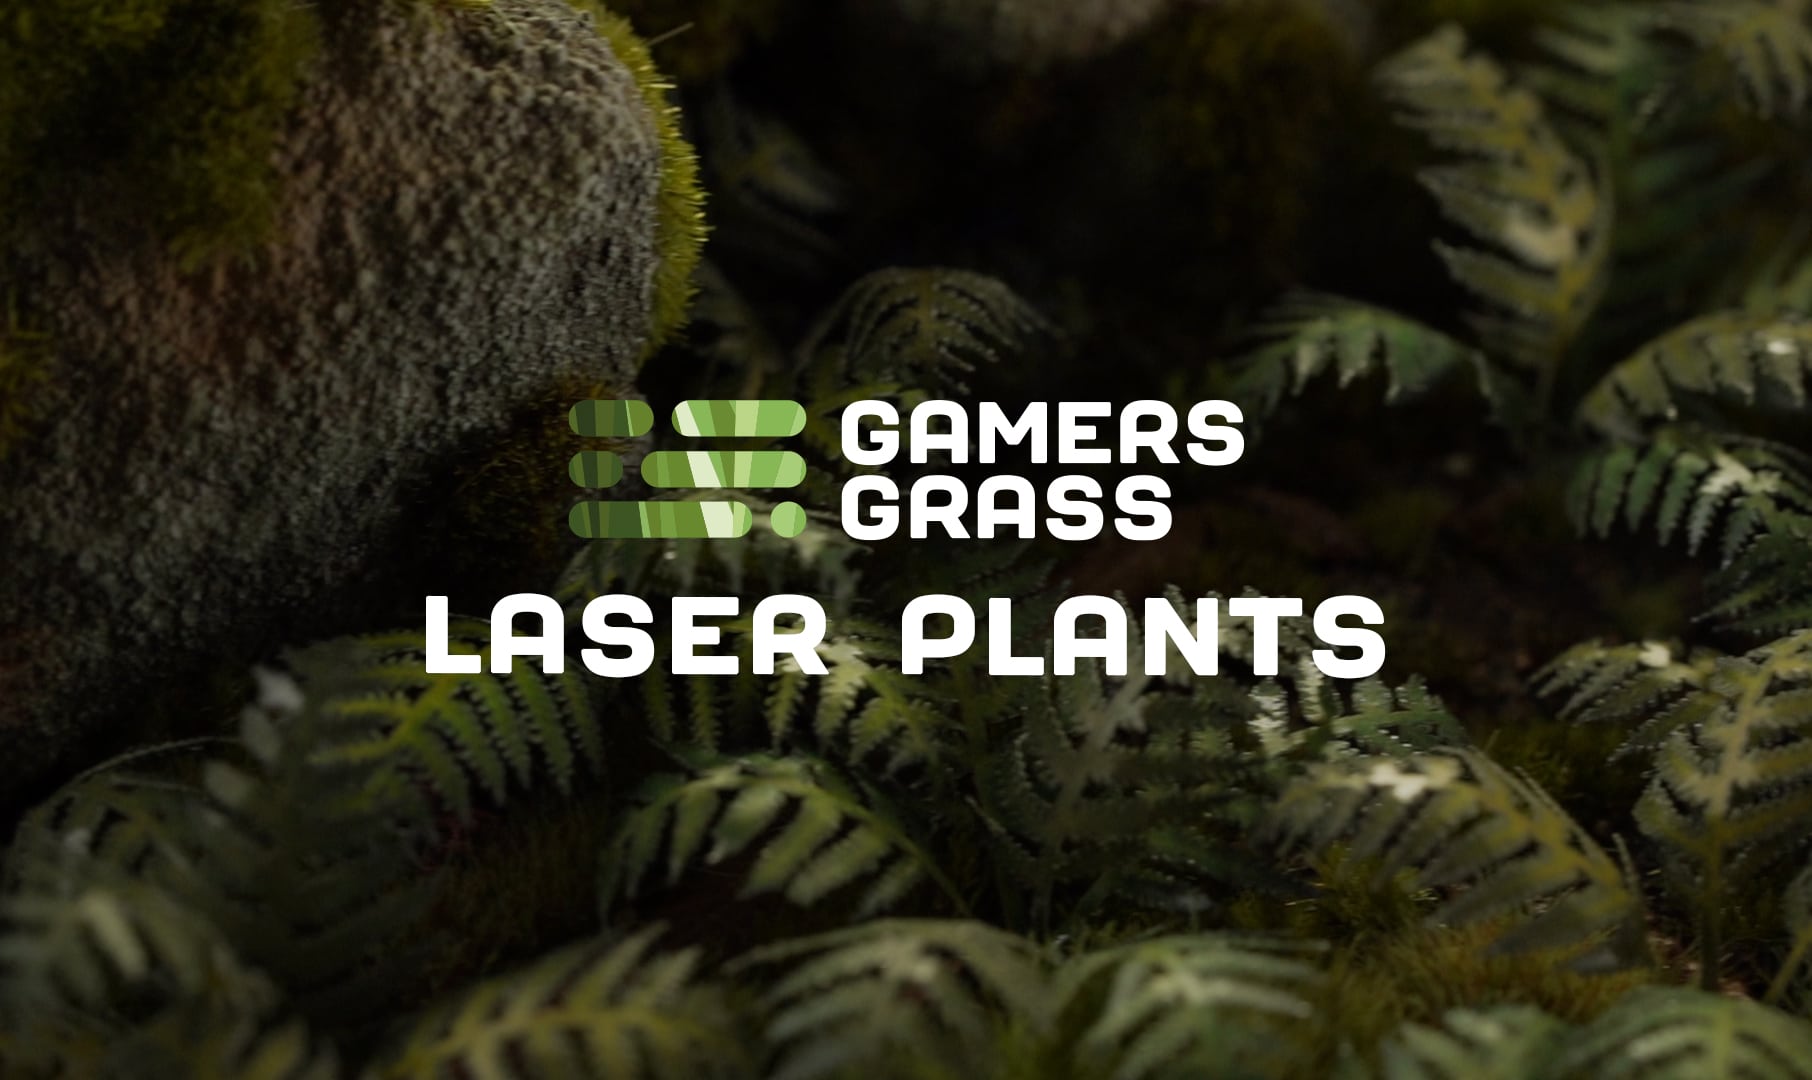 Gamers Grass: SPIKEY DENSE & XL TUFTS - Basing & Diorama Grass